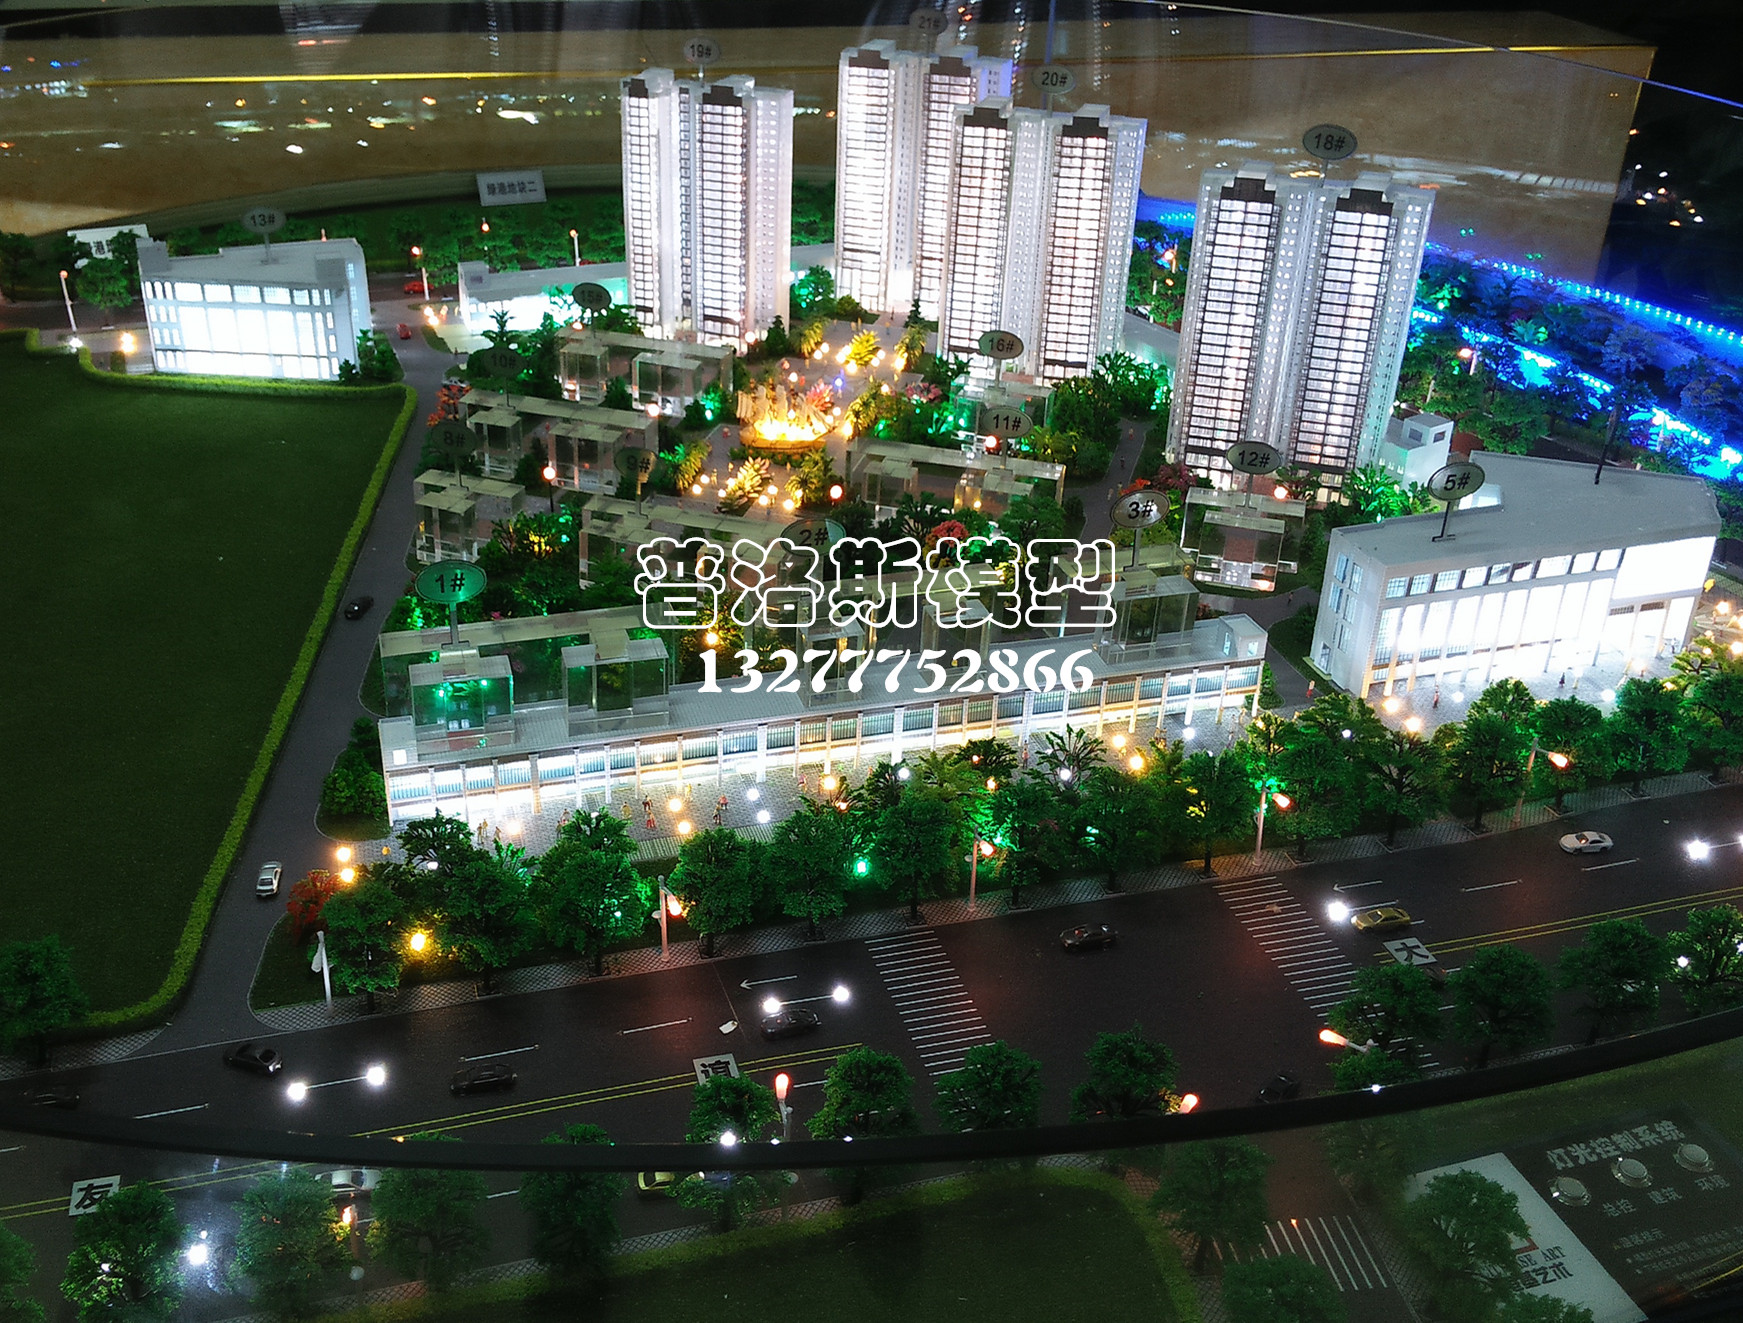 广西境内地产模型规划模型承制商-广西南宁普洛斯模型竭诚为您服务  广西境内地产模型